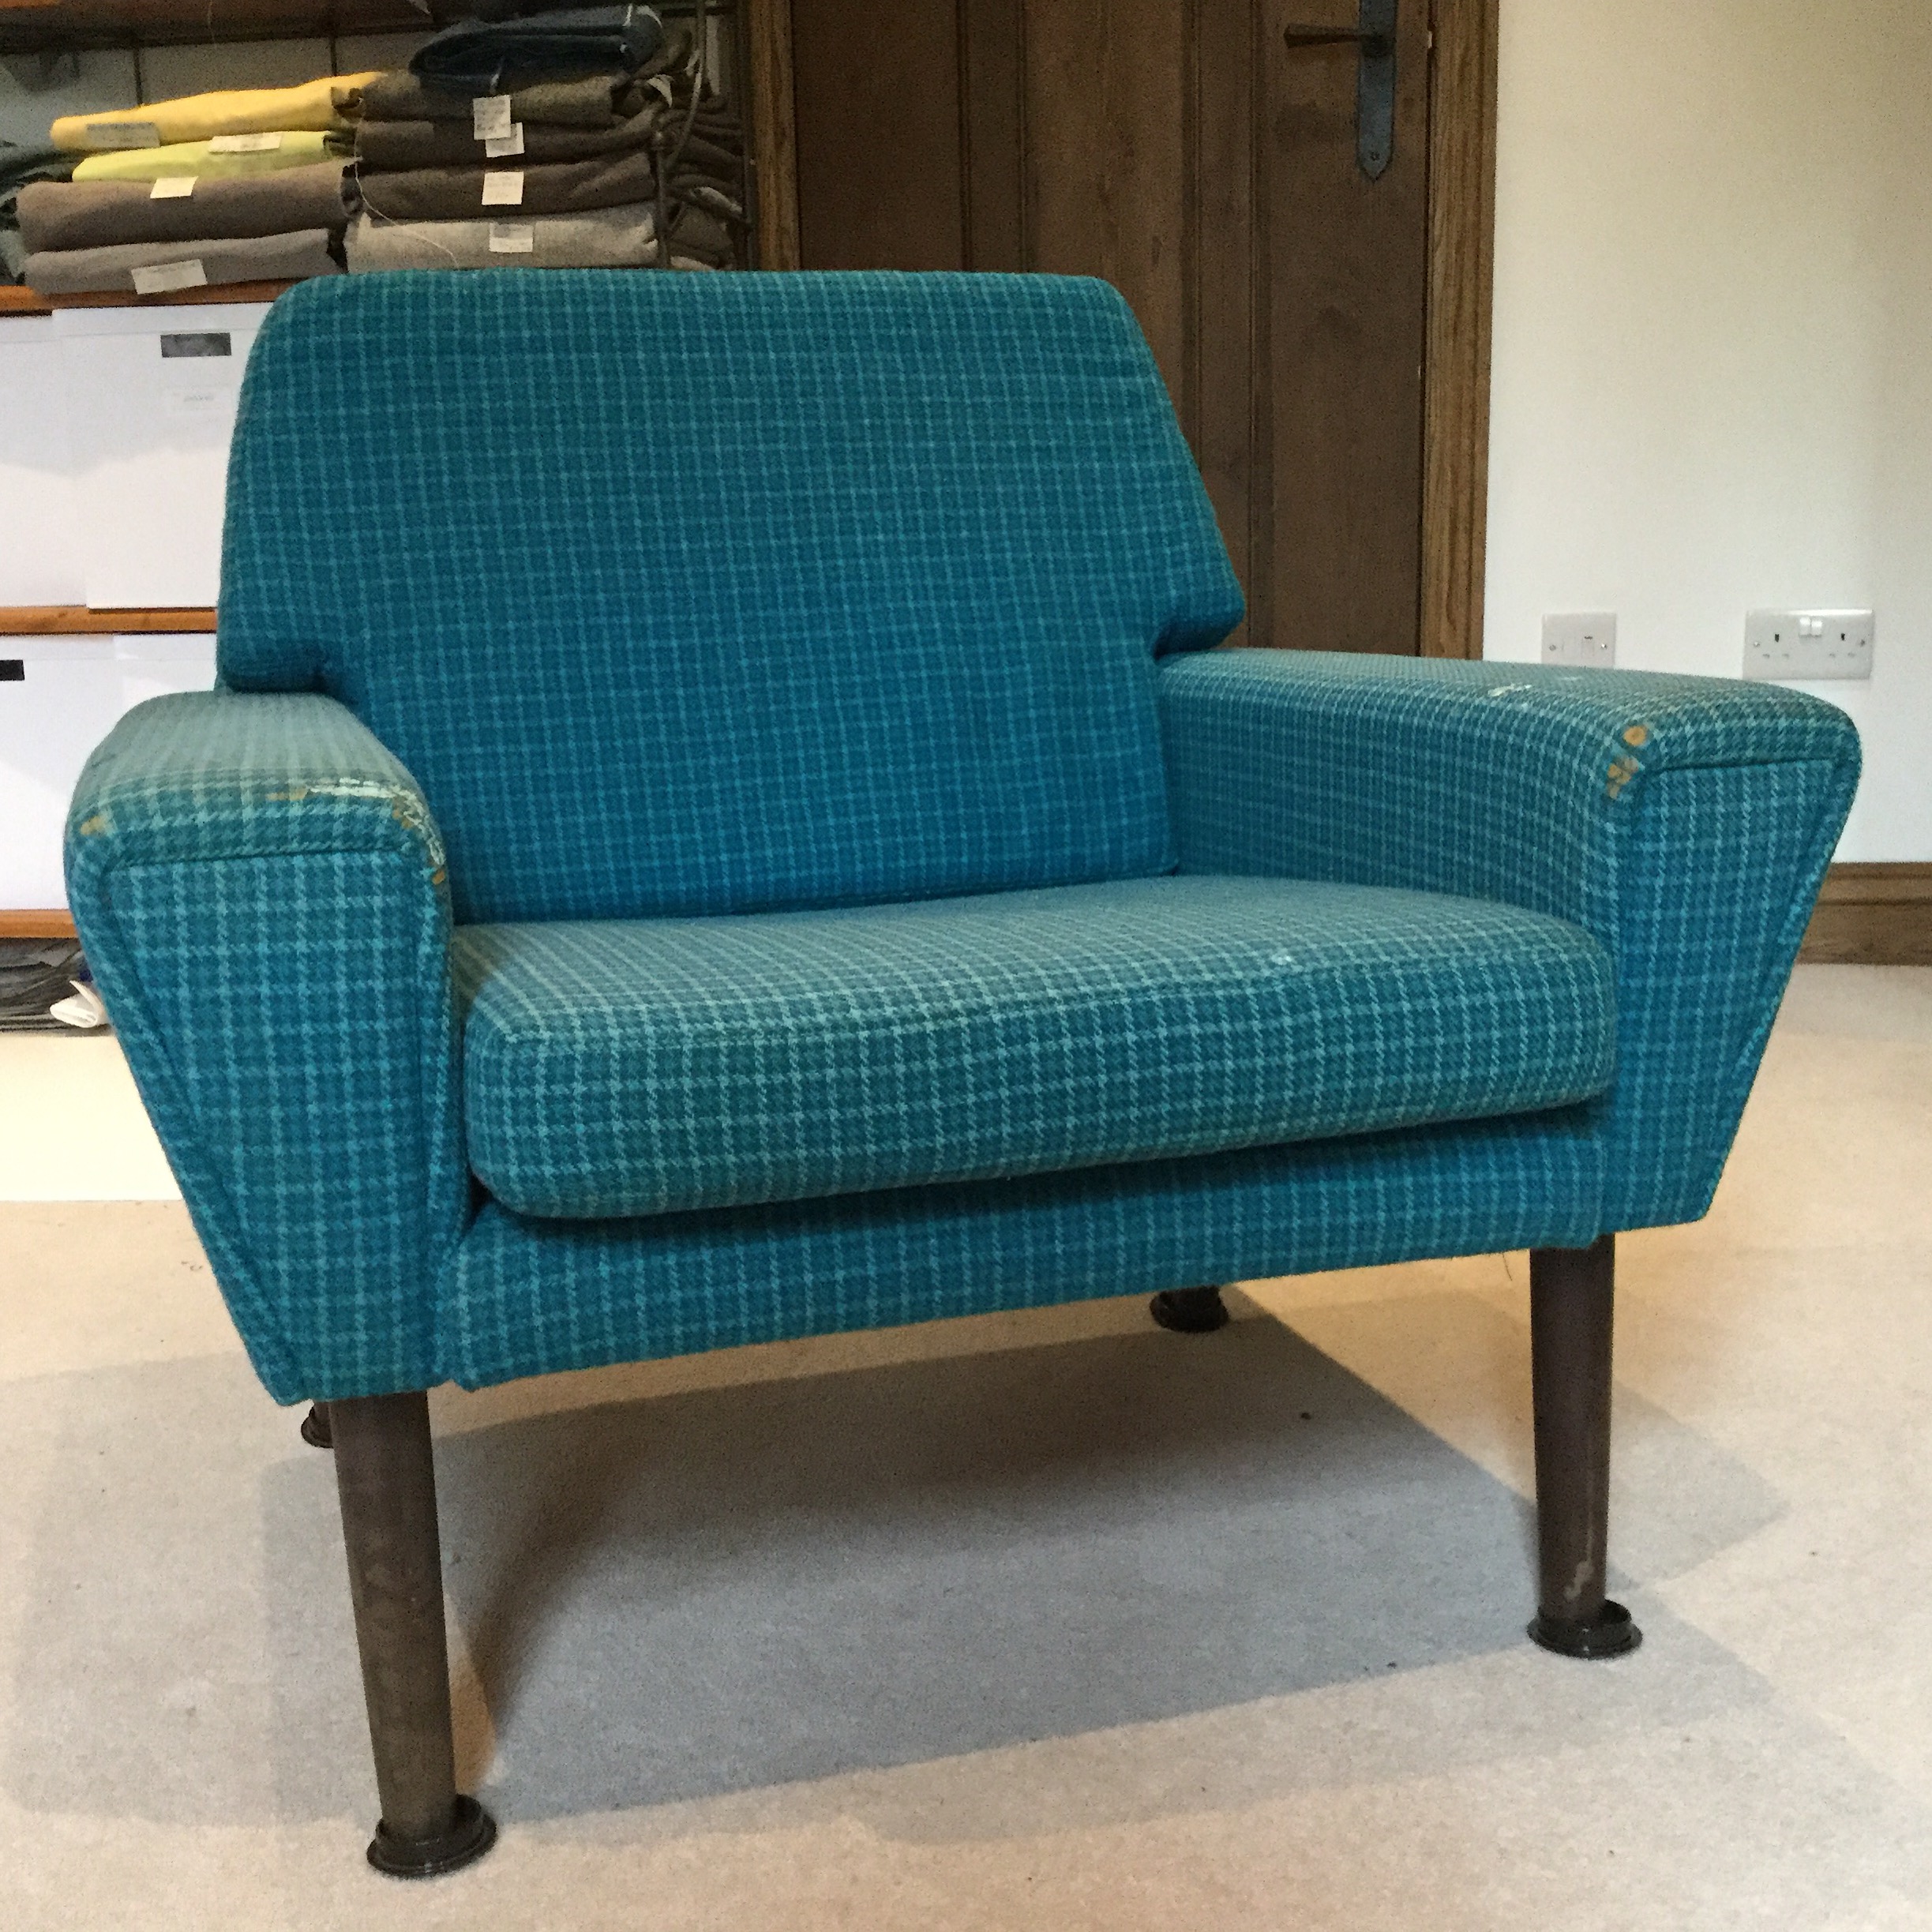 Komfort Danish Mid Century Chair Before Refurb